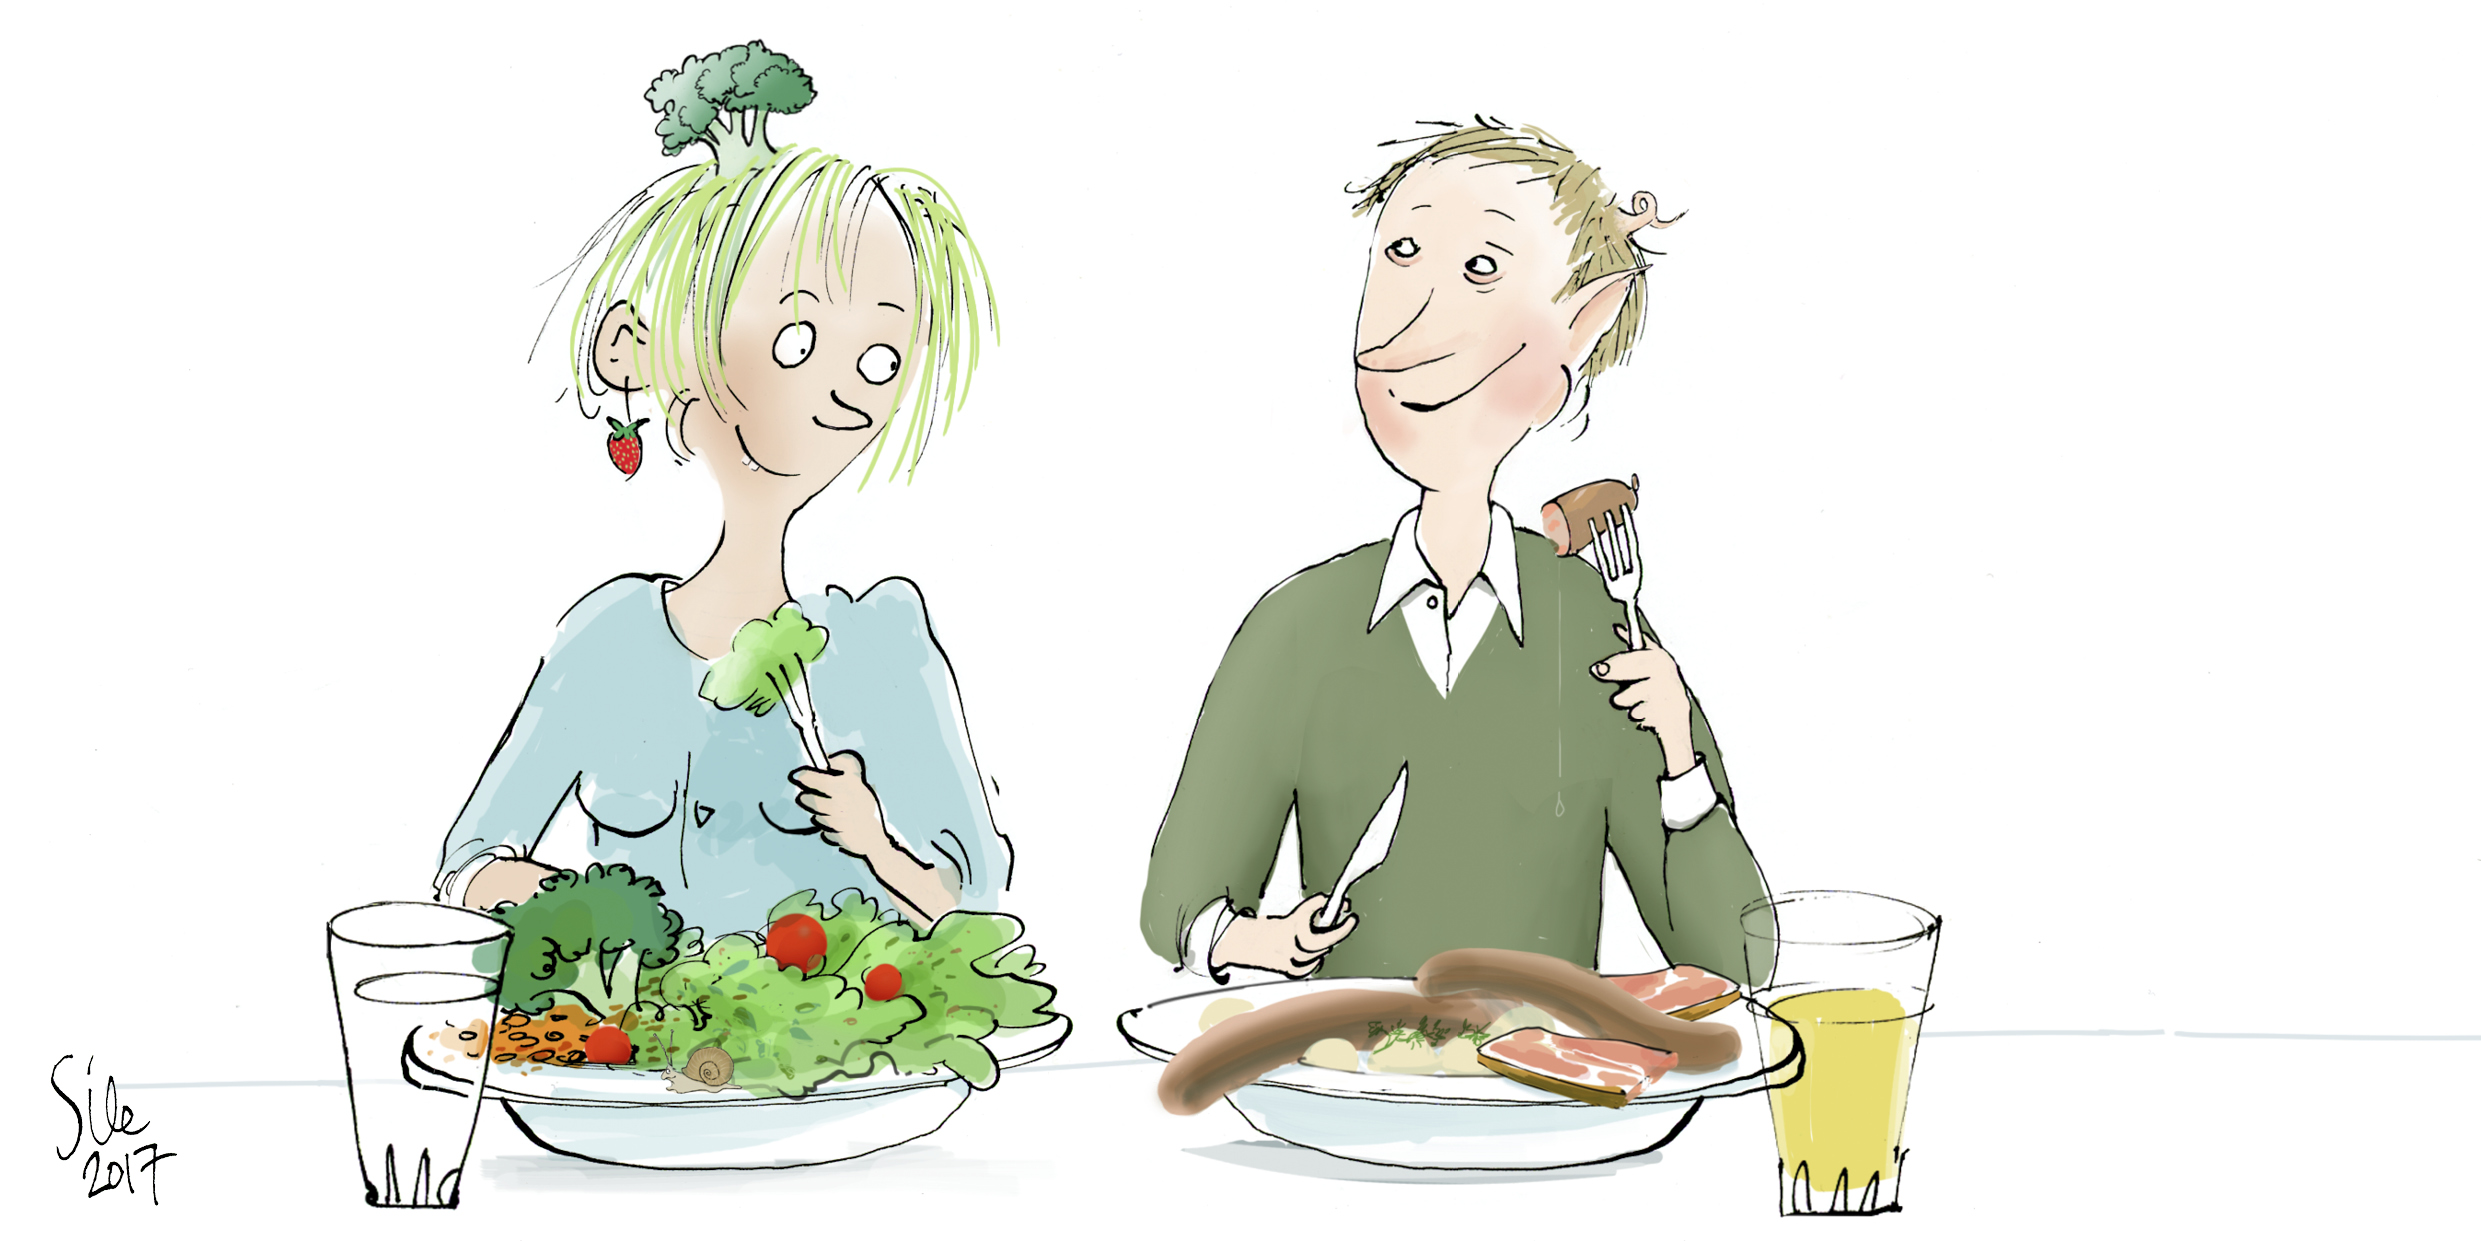 Das Comic-Bild zeigt eine Frau, die vor allem pflanzliche Produkte ist und einen Mann, der hauptsächlich Fleisch isst.